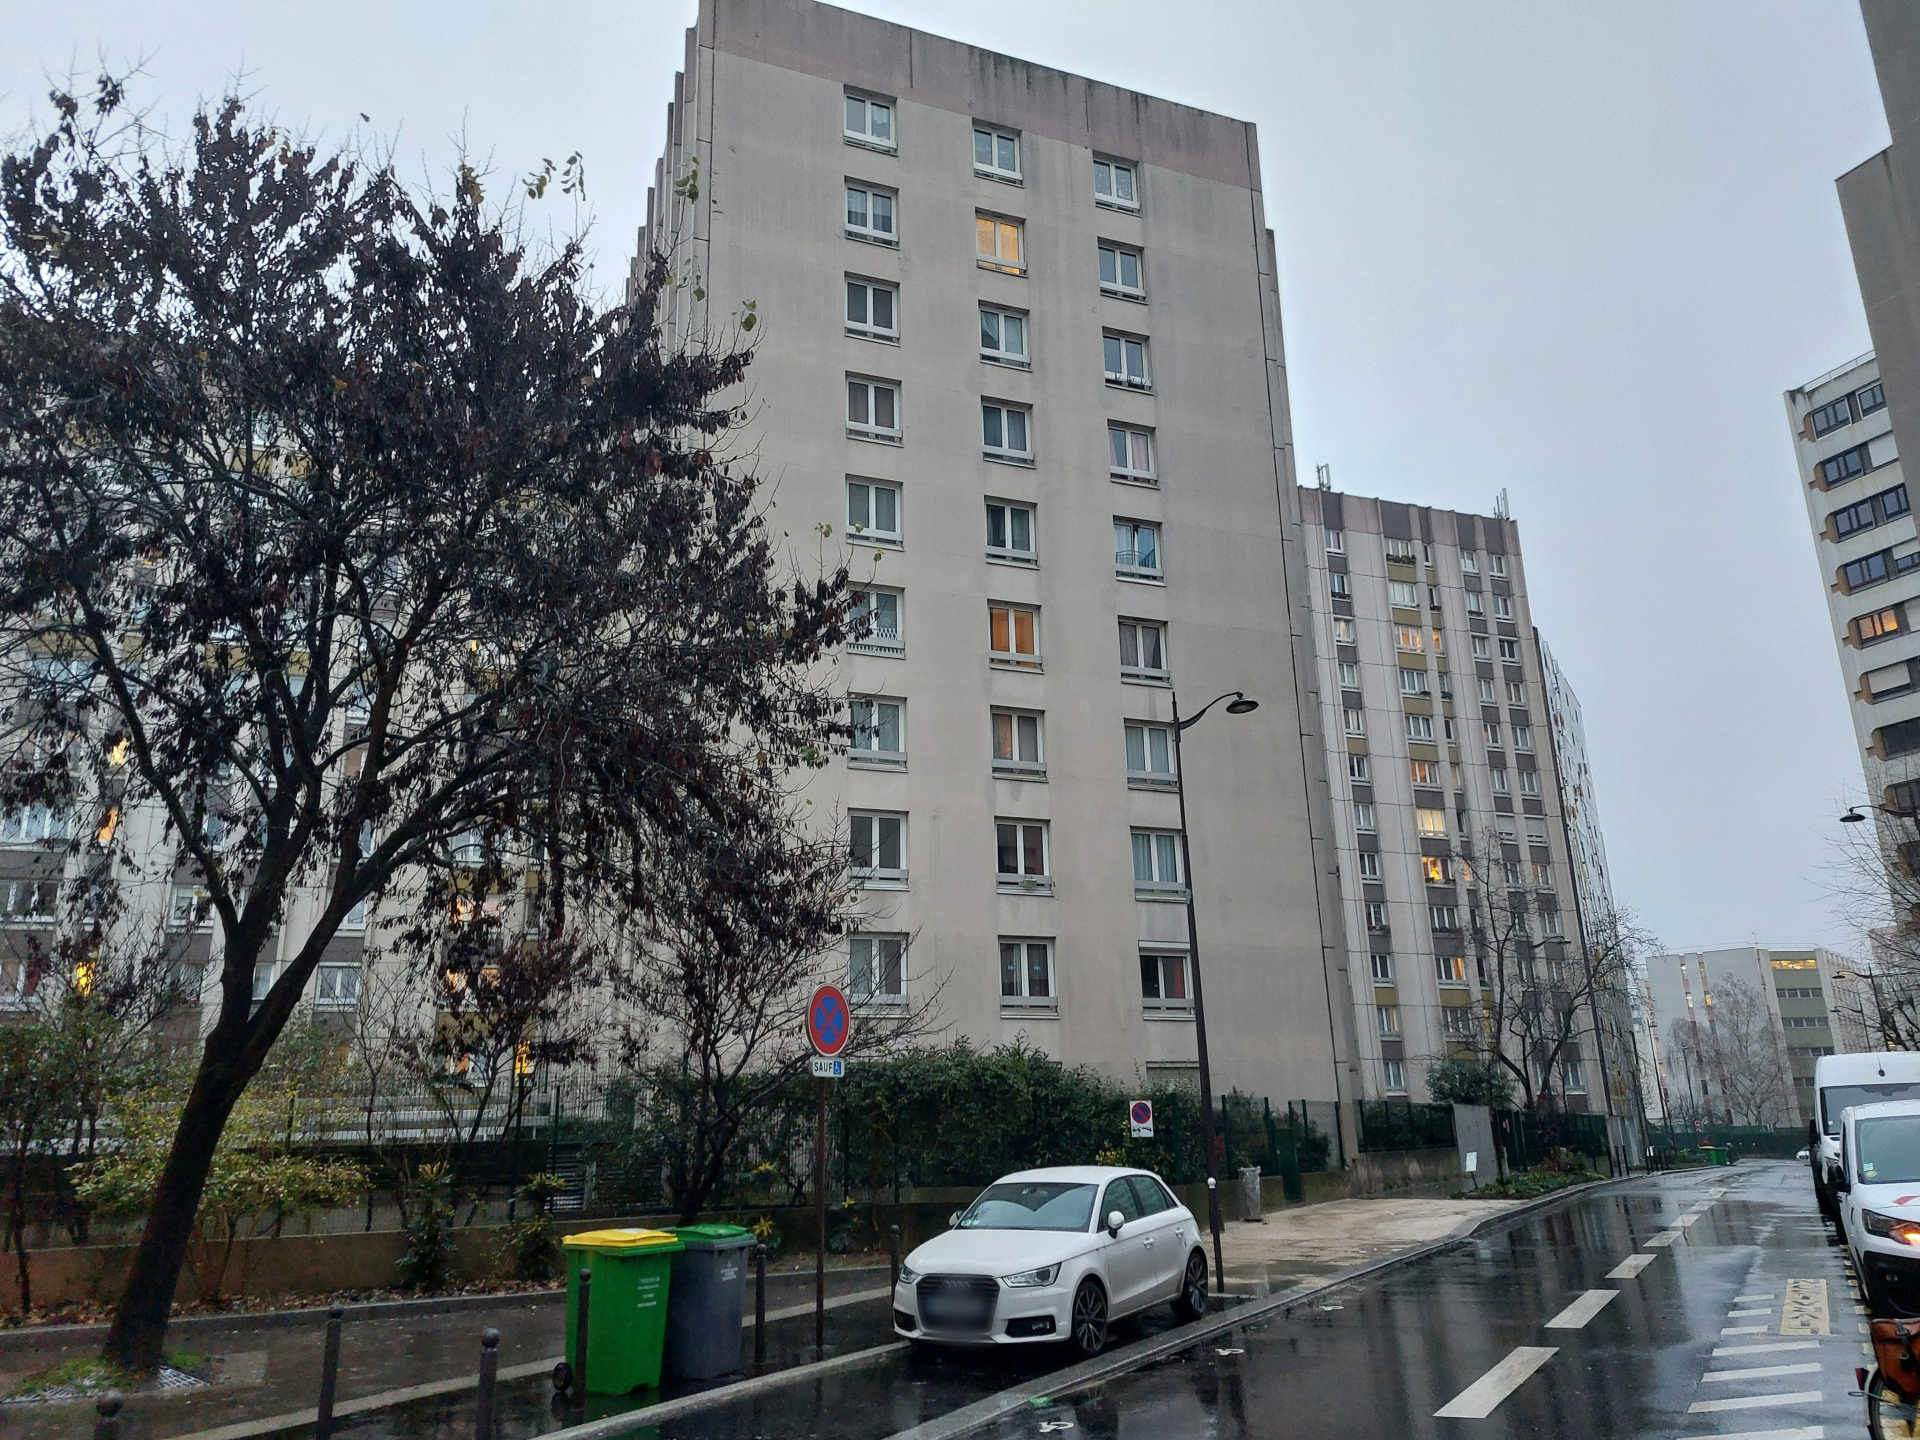 Un homme est mort d'une chute du 6e étage, rue Jean-Colly (Paris XIIIe), mardi 16 janvier au matin. LP/Carole Sterlé